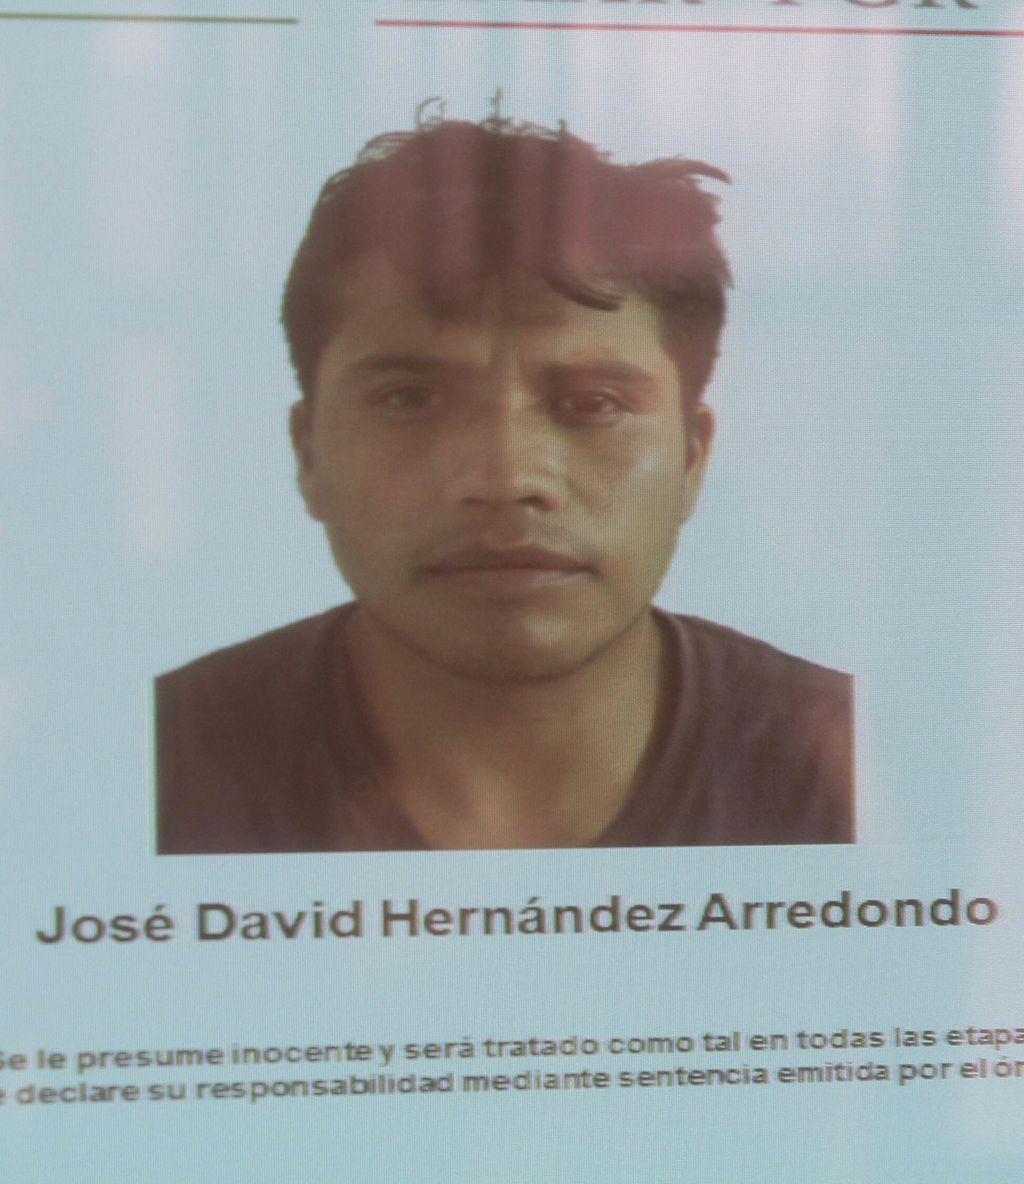 Hernández Arredondo lideraba la organización de secuestro y se encargaba de elegir las víctimas, las internaba en el bosque, negociaba el monto el rescate, además de dedicarse al narcotráfico. (Notimex)